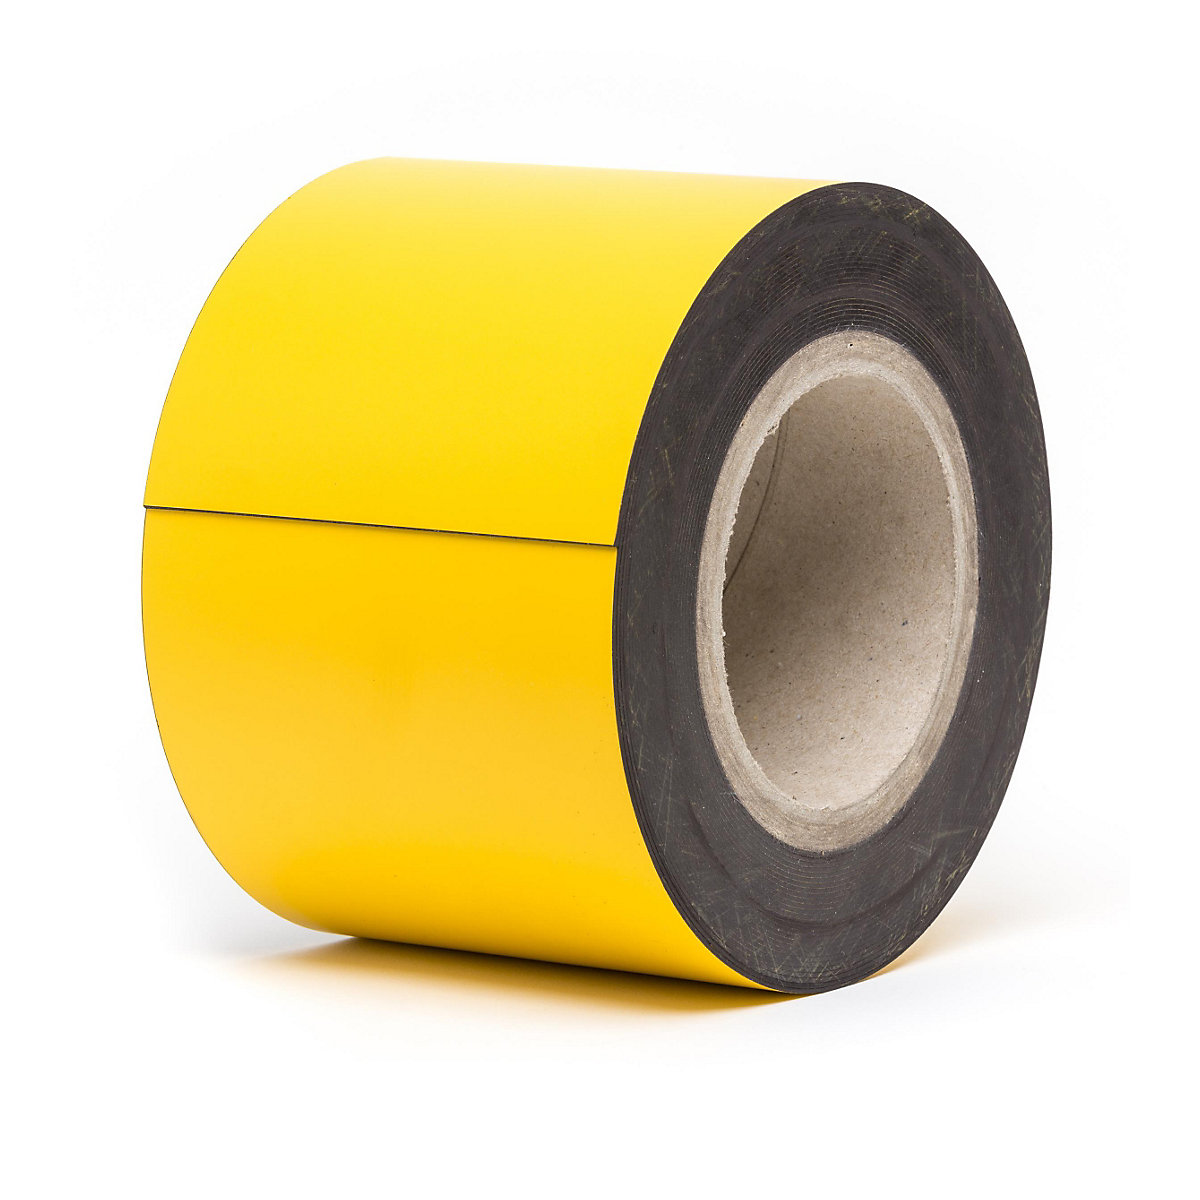 Magnetne skladišne pločice, u roli, u žutoj boji, visina 100 mm, dužina role 10 m-7